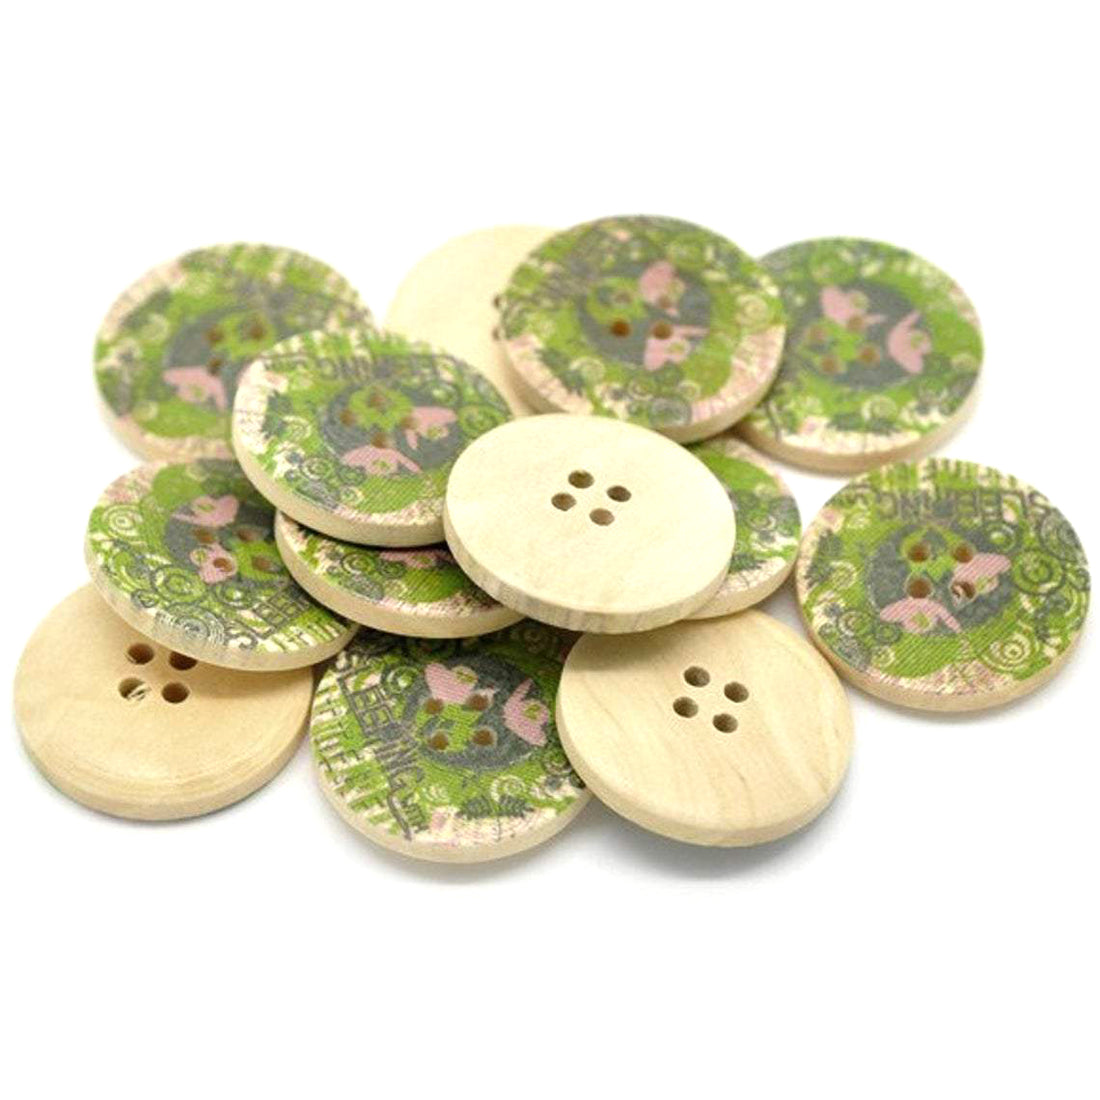 Bouton de bois avec motif floral vert olive et rose de 3cm - ensemble de 6 boutons boutons de bois naturel